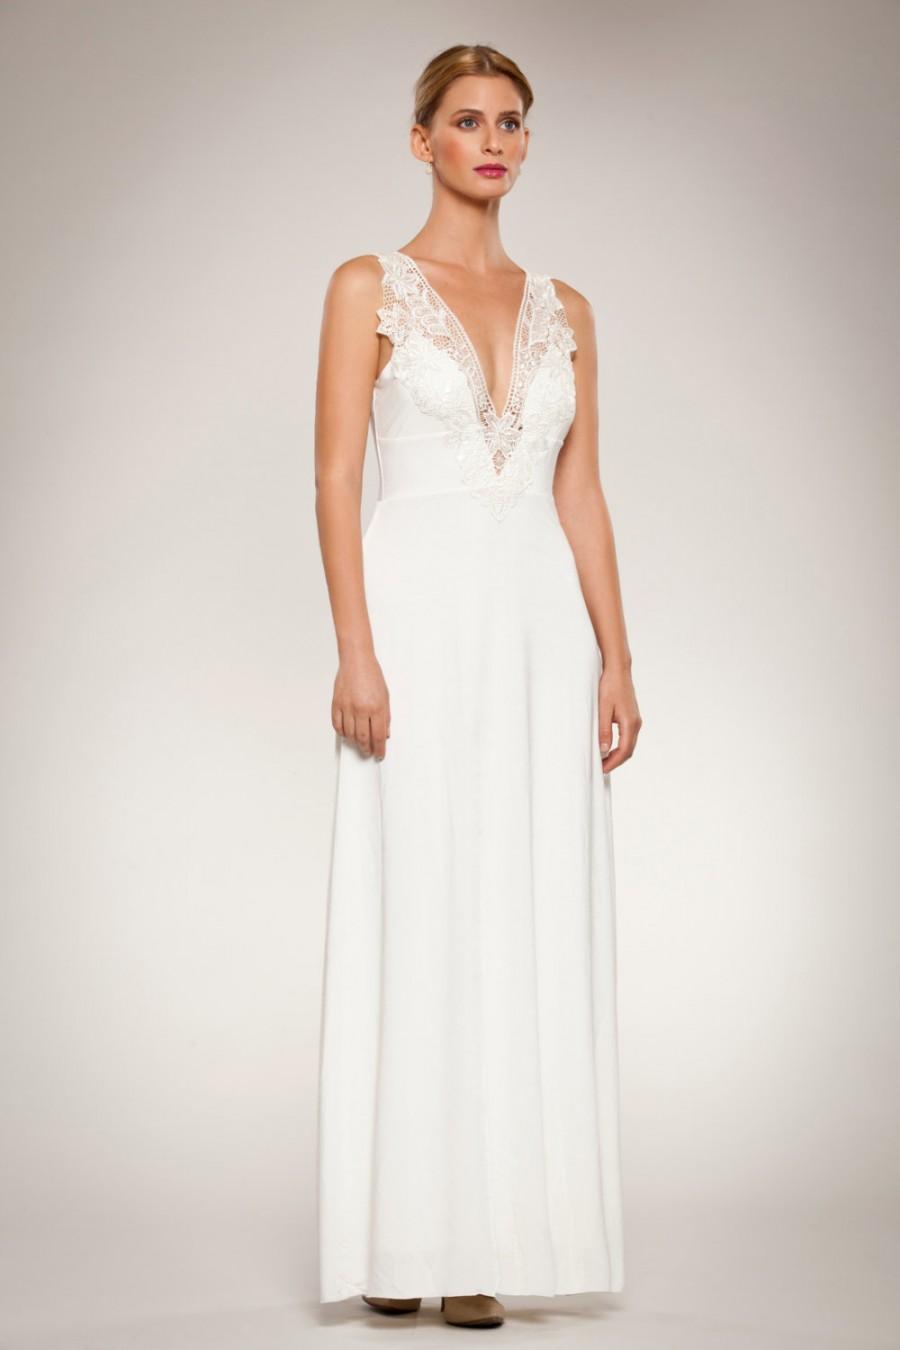 زفاف - Romantic Deep V Ivory Wedding Dress Gown Front and Back Embroidery Lace Flower Appliqués Fitted Waist Open Back Flared Skirt Custom Made